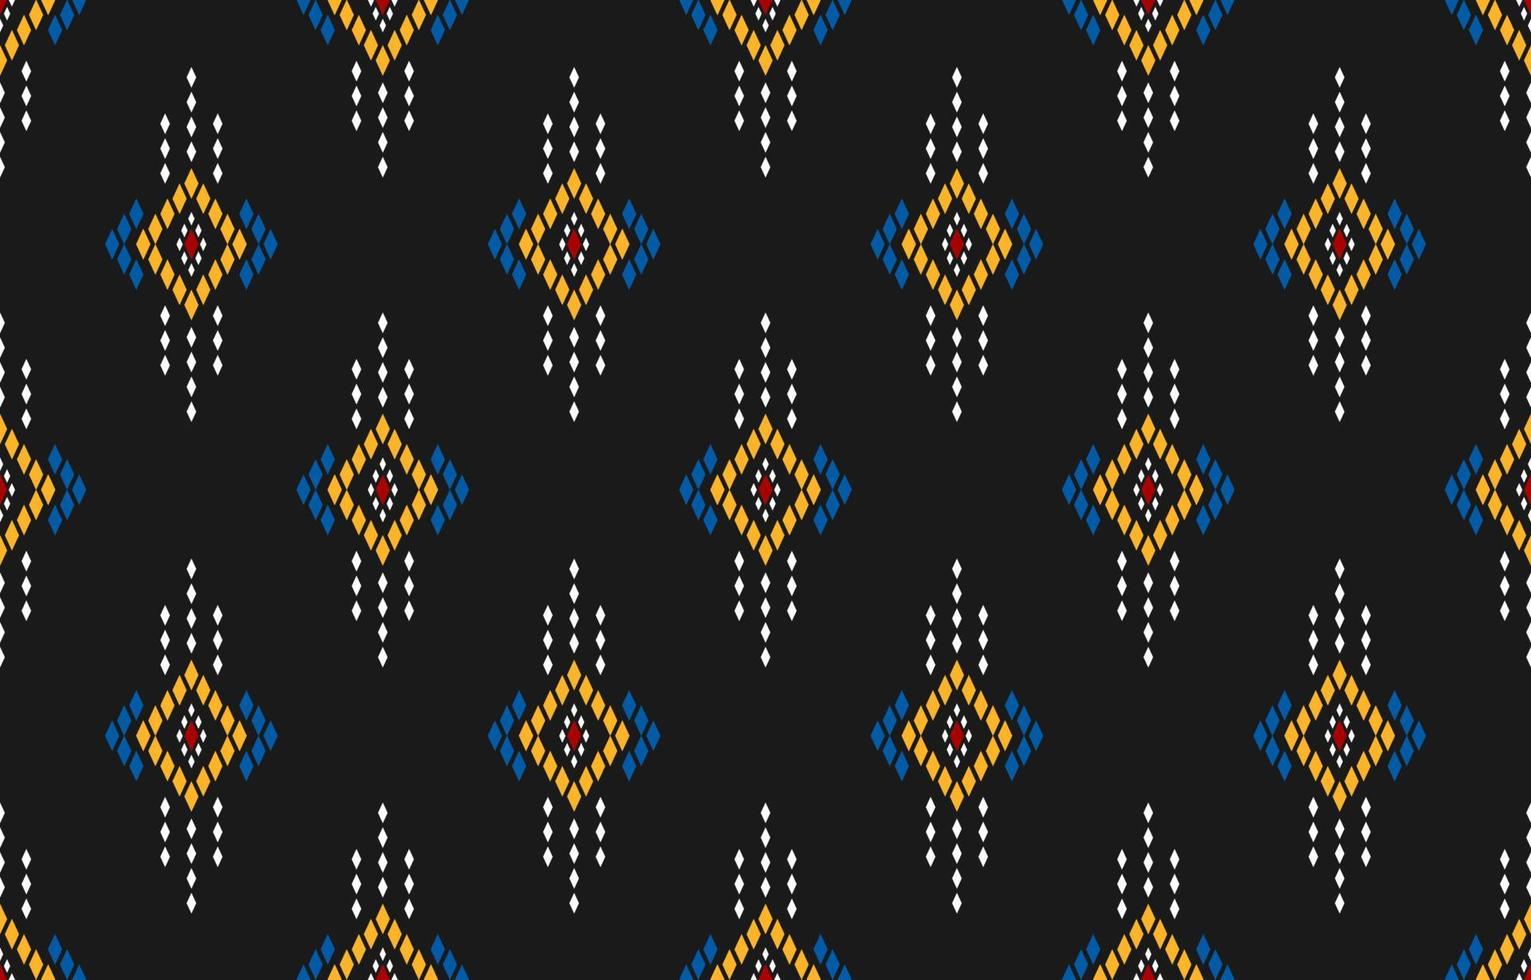 tecido asteca de fundo. padrão sem emenda oriental geométrico étnico tradicional. estilo mexicano. vetor